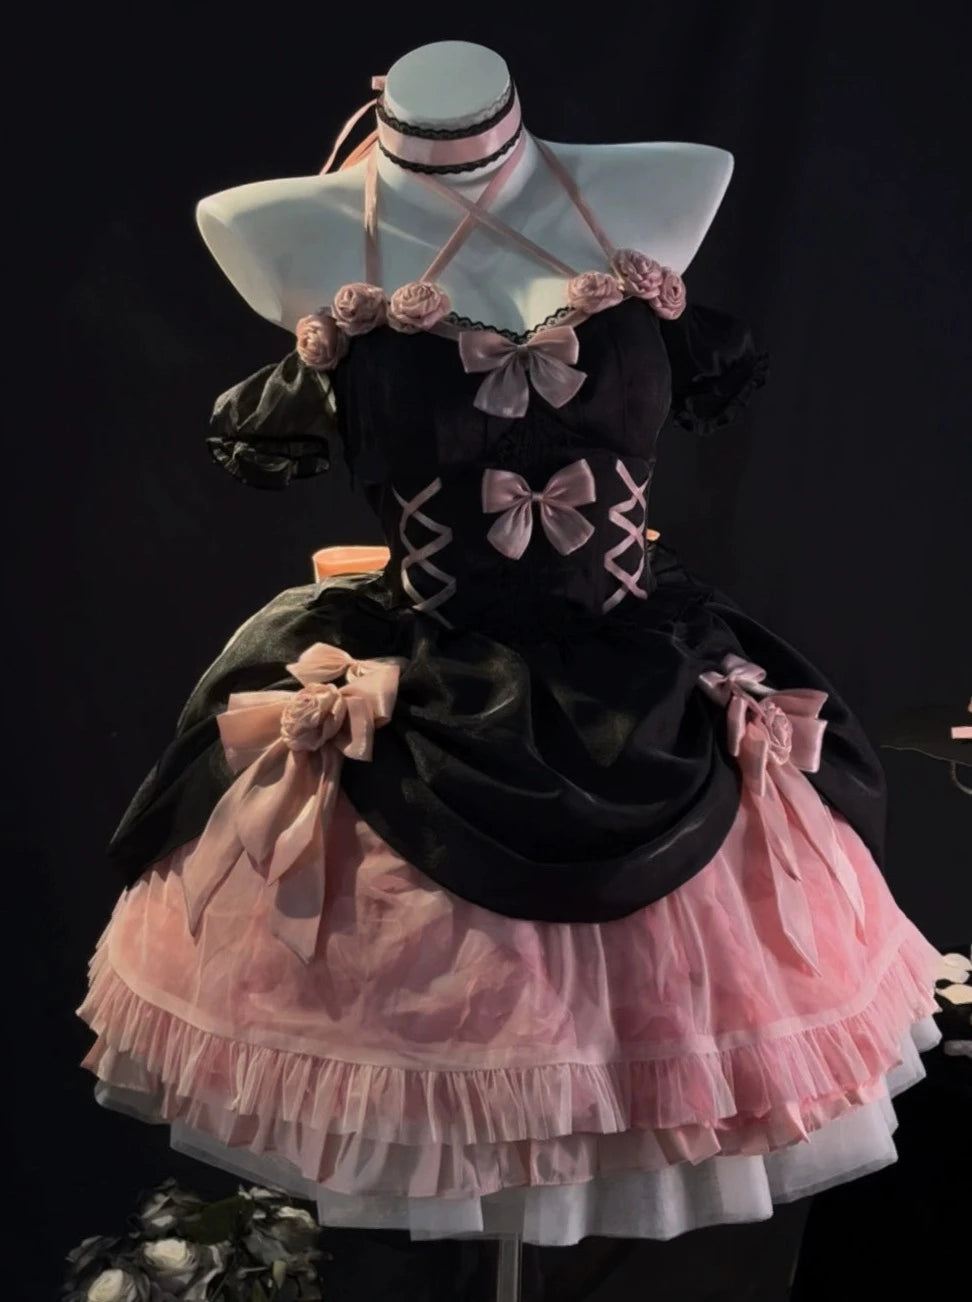 블랙 핑크 장미 로리타 드레스 꽃 웨딩 드레스 로리타 달콤한 매운 생선 뼈 푹신한 공주 드레스를 실행 중입니다.